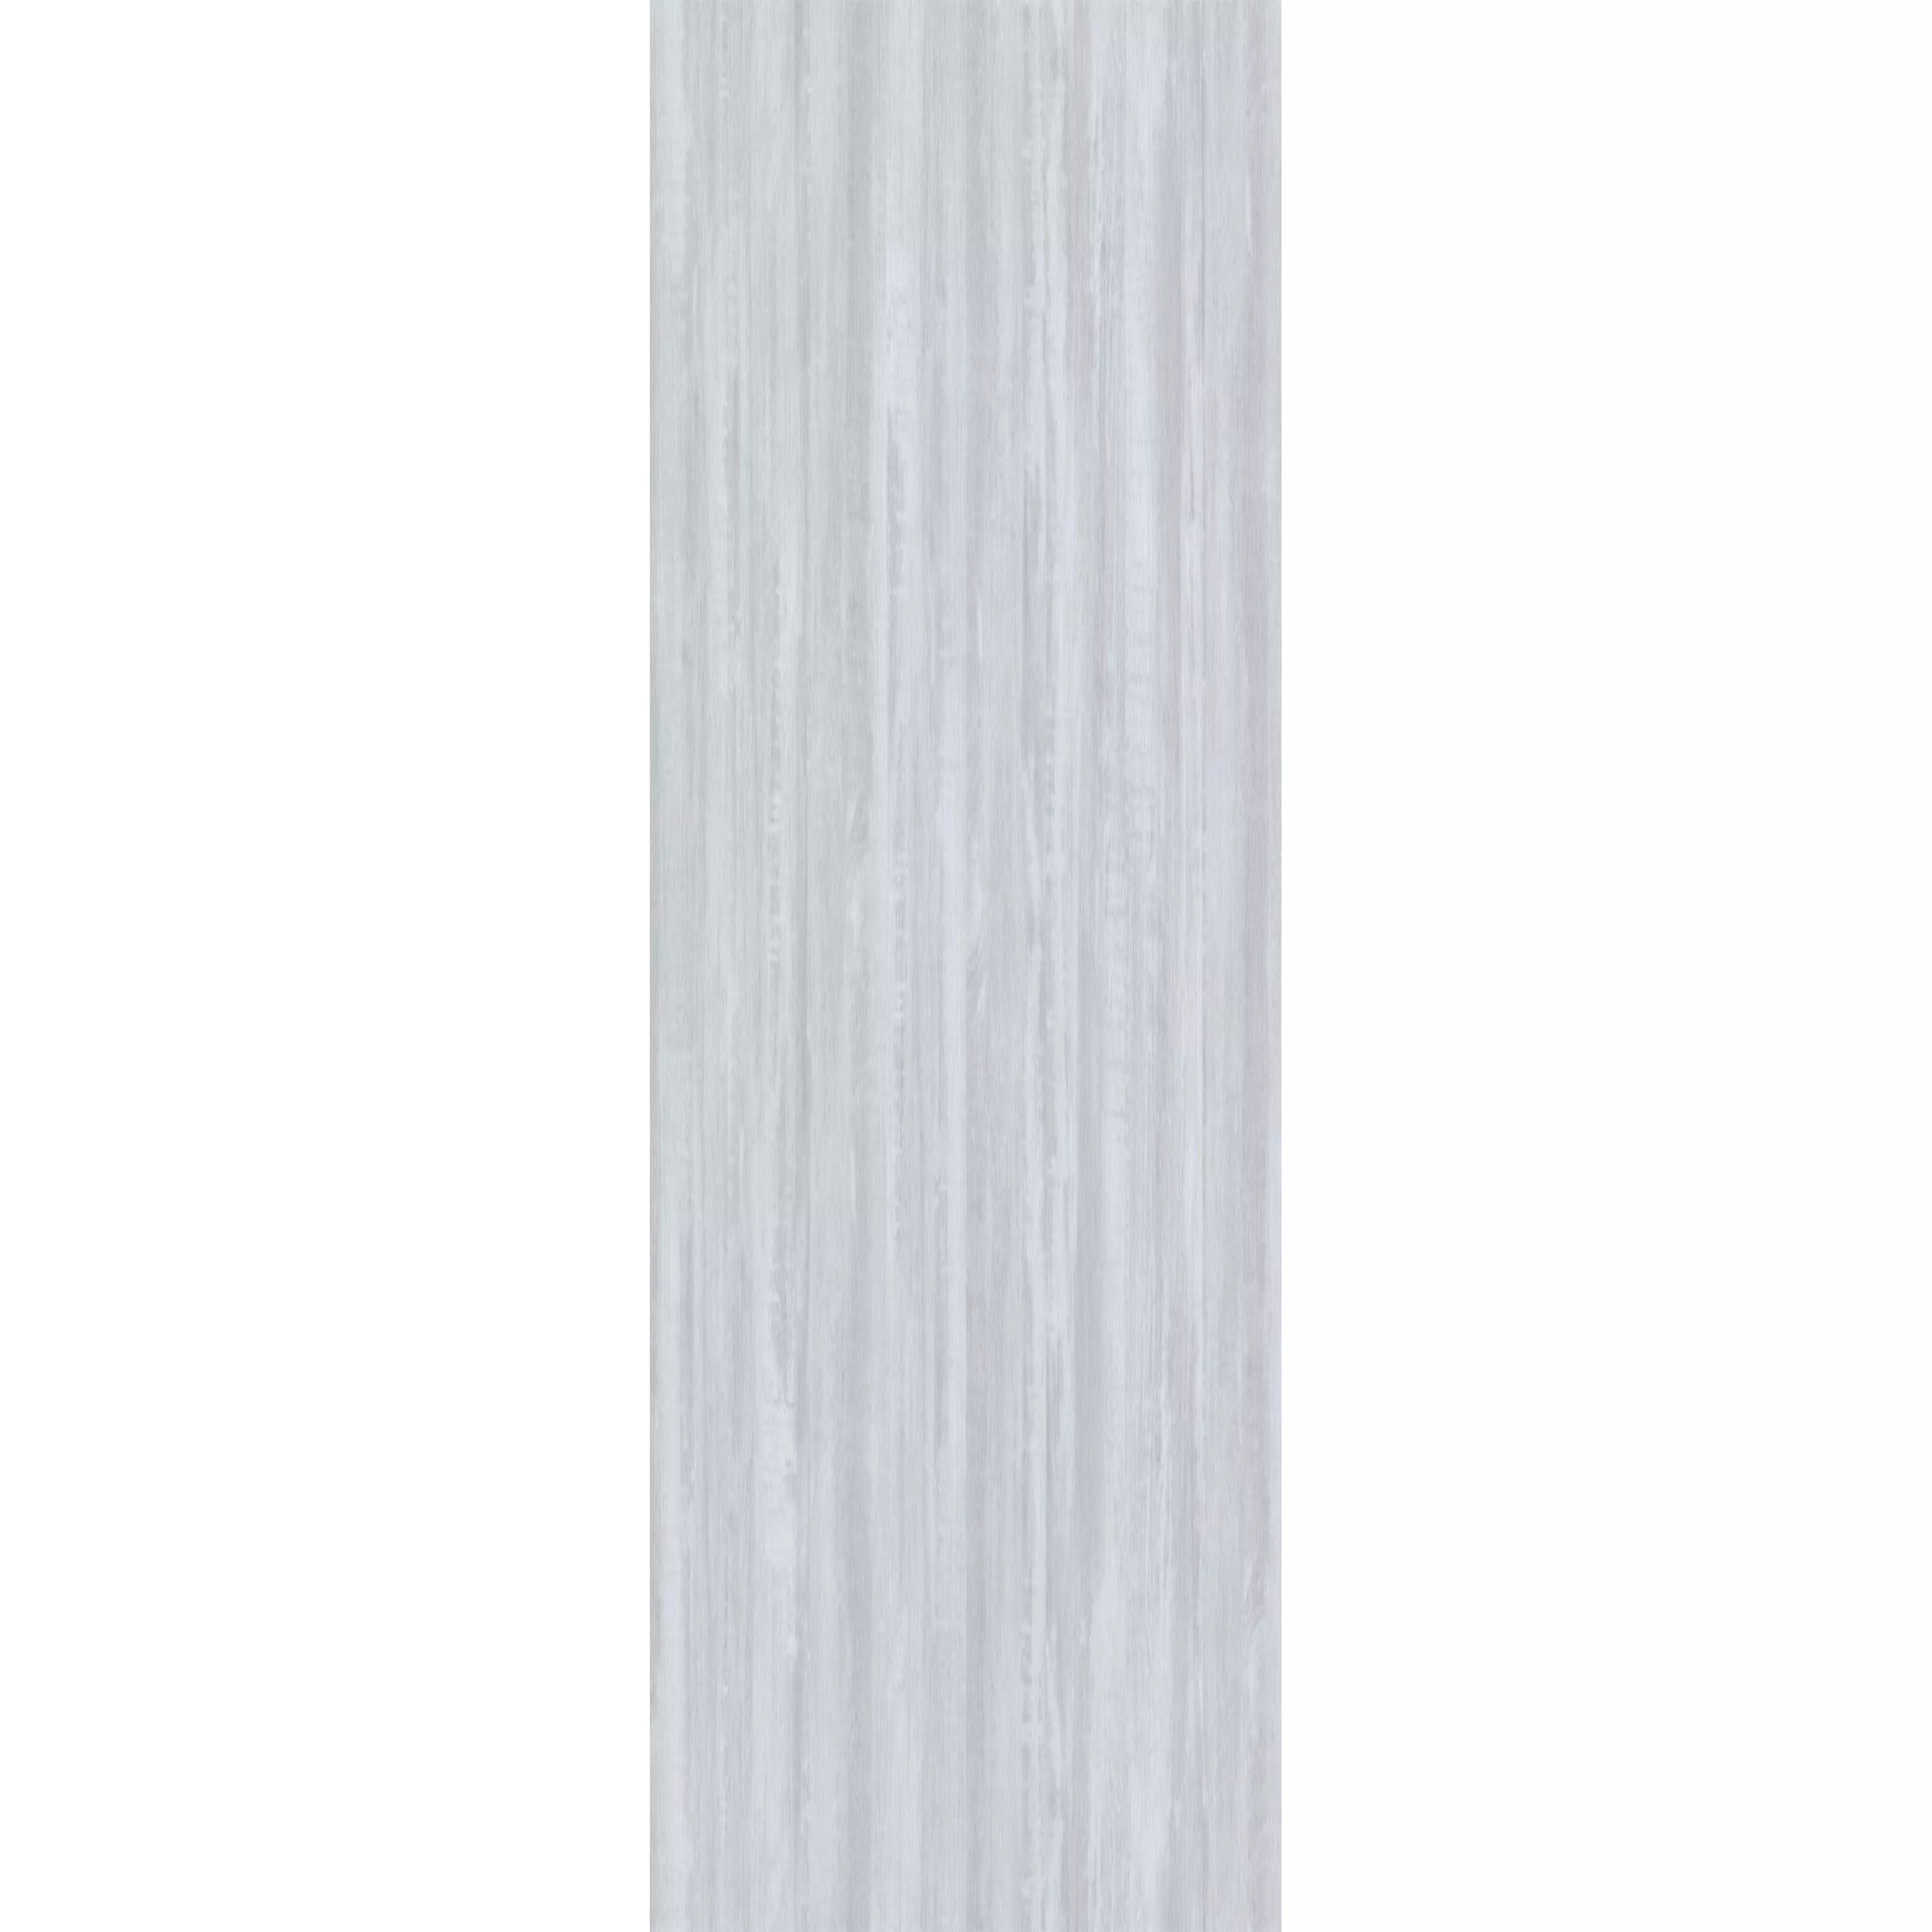 Vinil Padló Kattintson A Rendszerre Snowwood Fehér 17,2x121cm